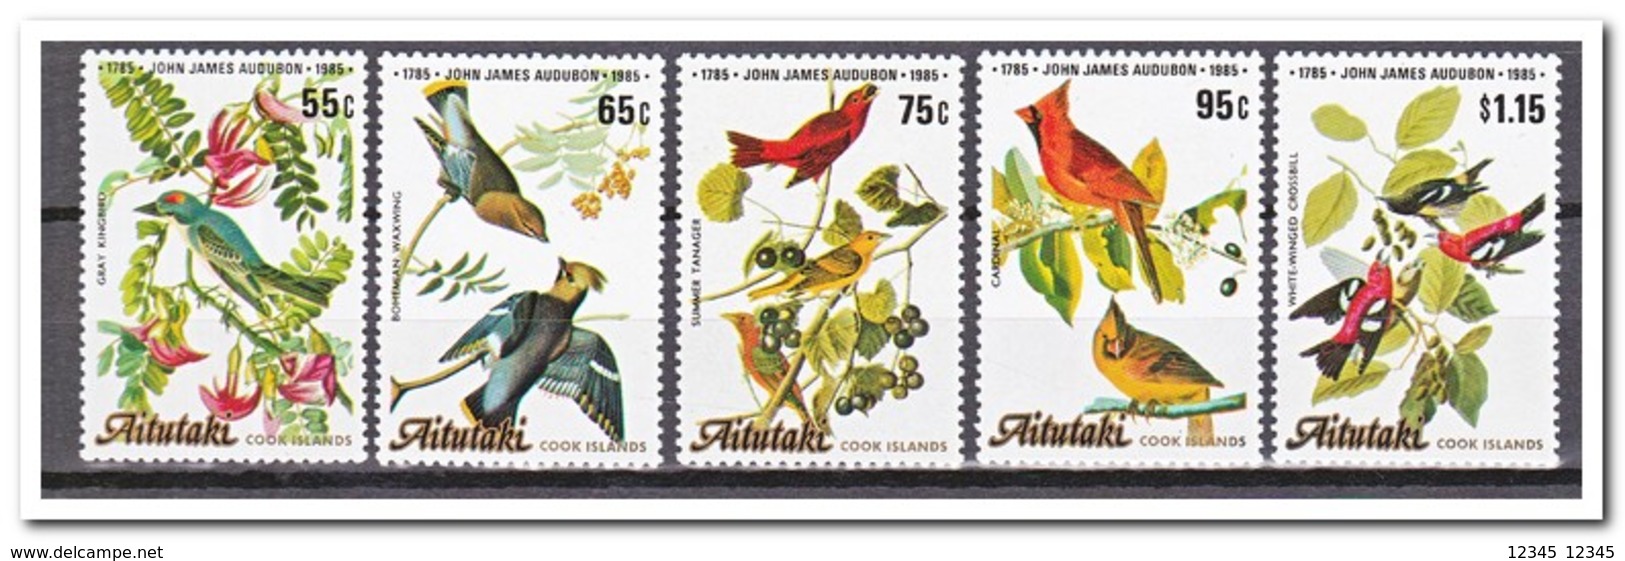 Aitutaki 1985, Postfris MNH, Birds - Aitutaki